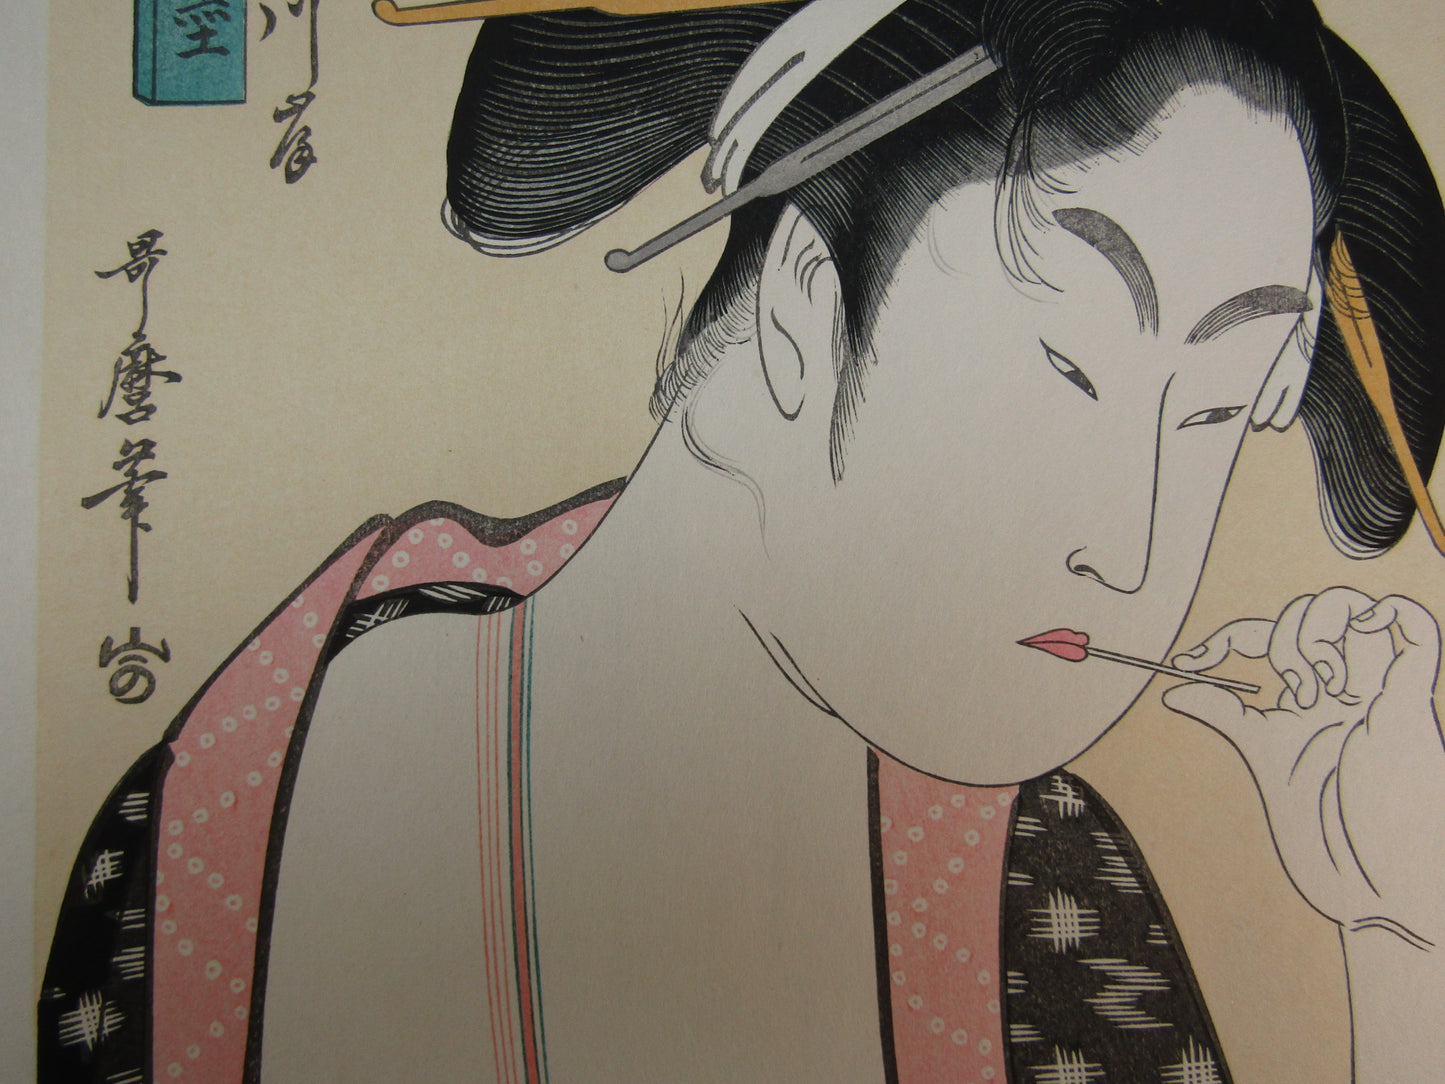 "Kitaguni Goshikisumi Kawagishi" Utamaro Woodblock print